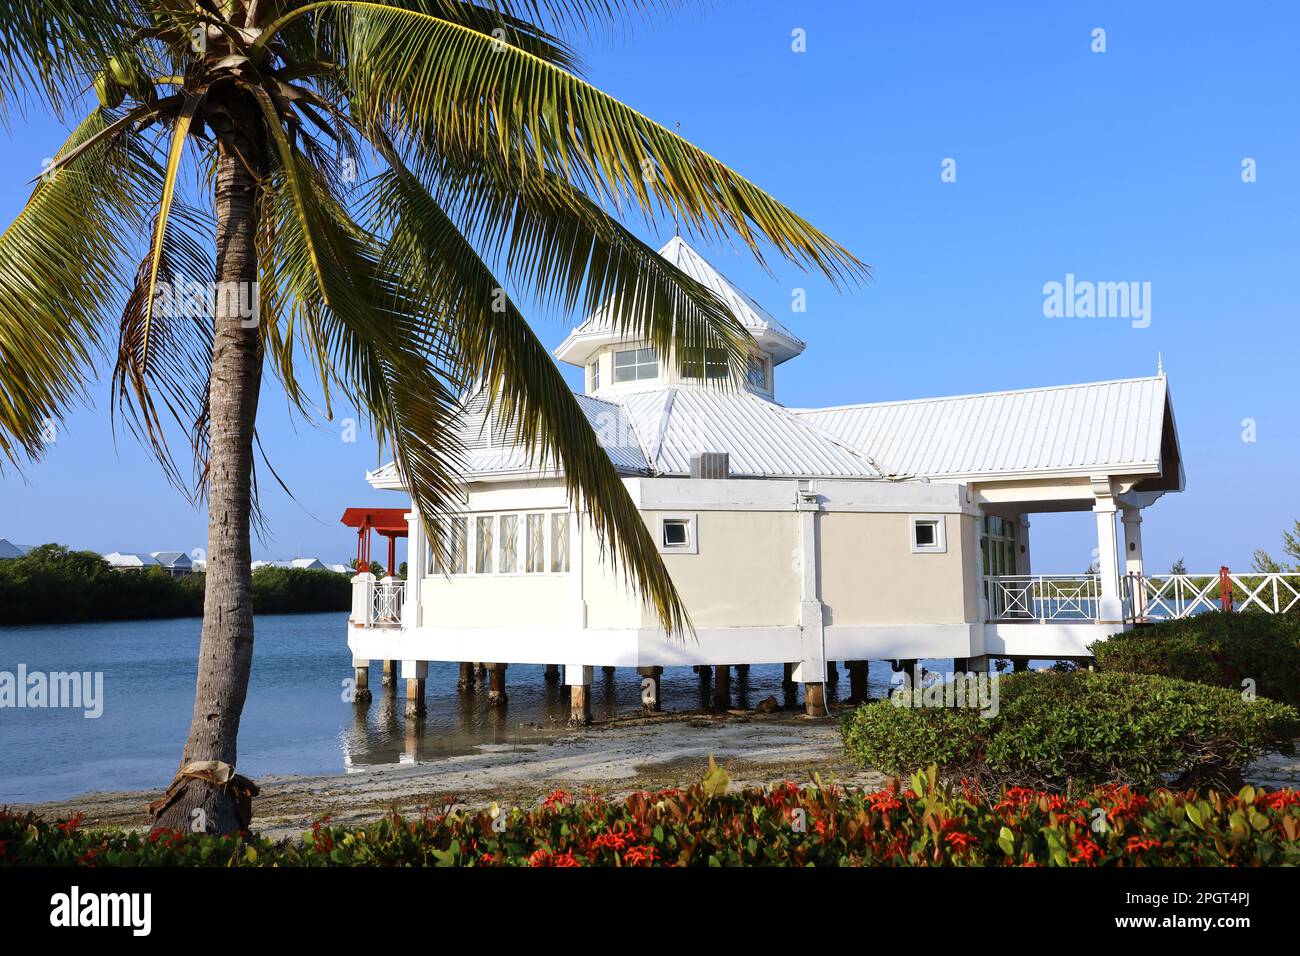 Vue pittoresque sur une maison blanche sur pilotis sur une plage tropicale avec des palmiers à noix de coco. Villa dans une baie sur l'île des Caraïbes Banque D'Images